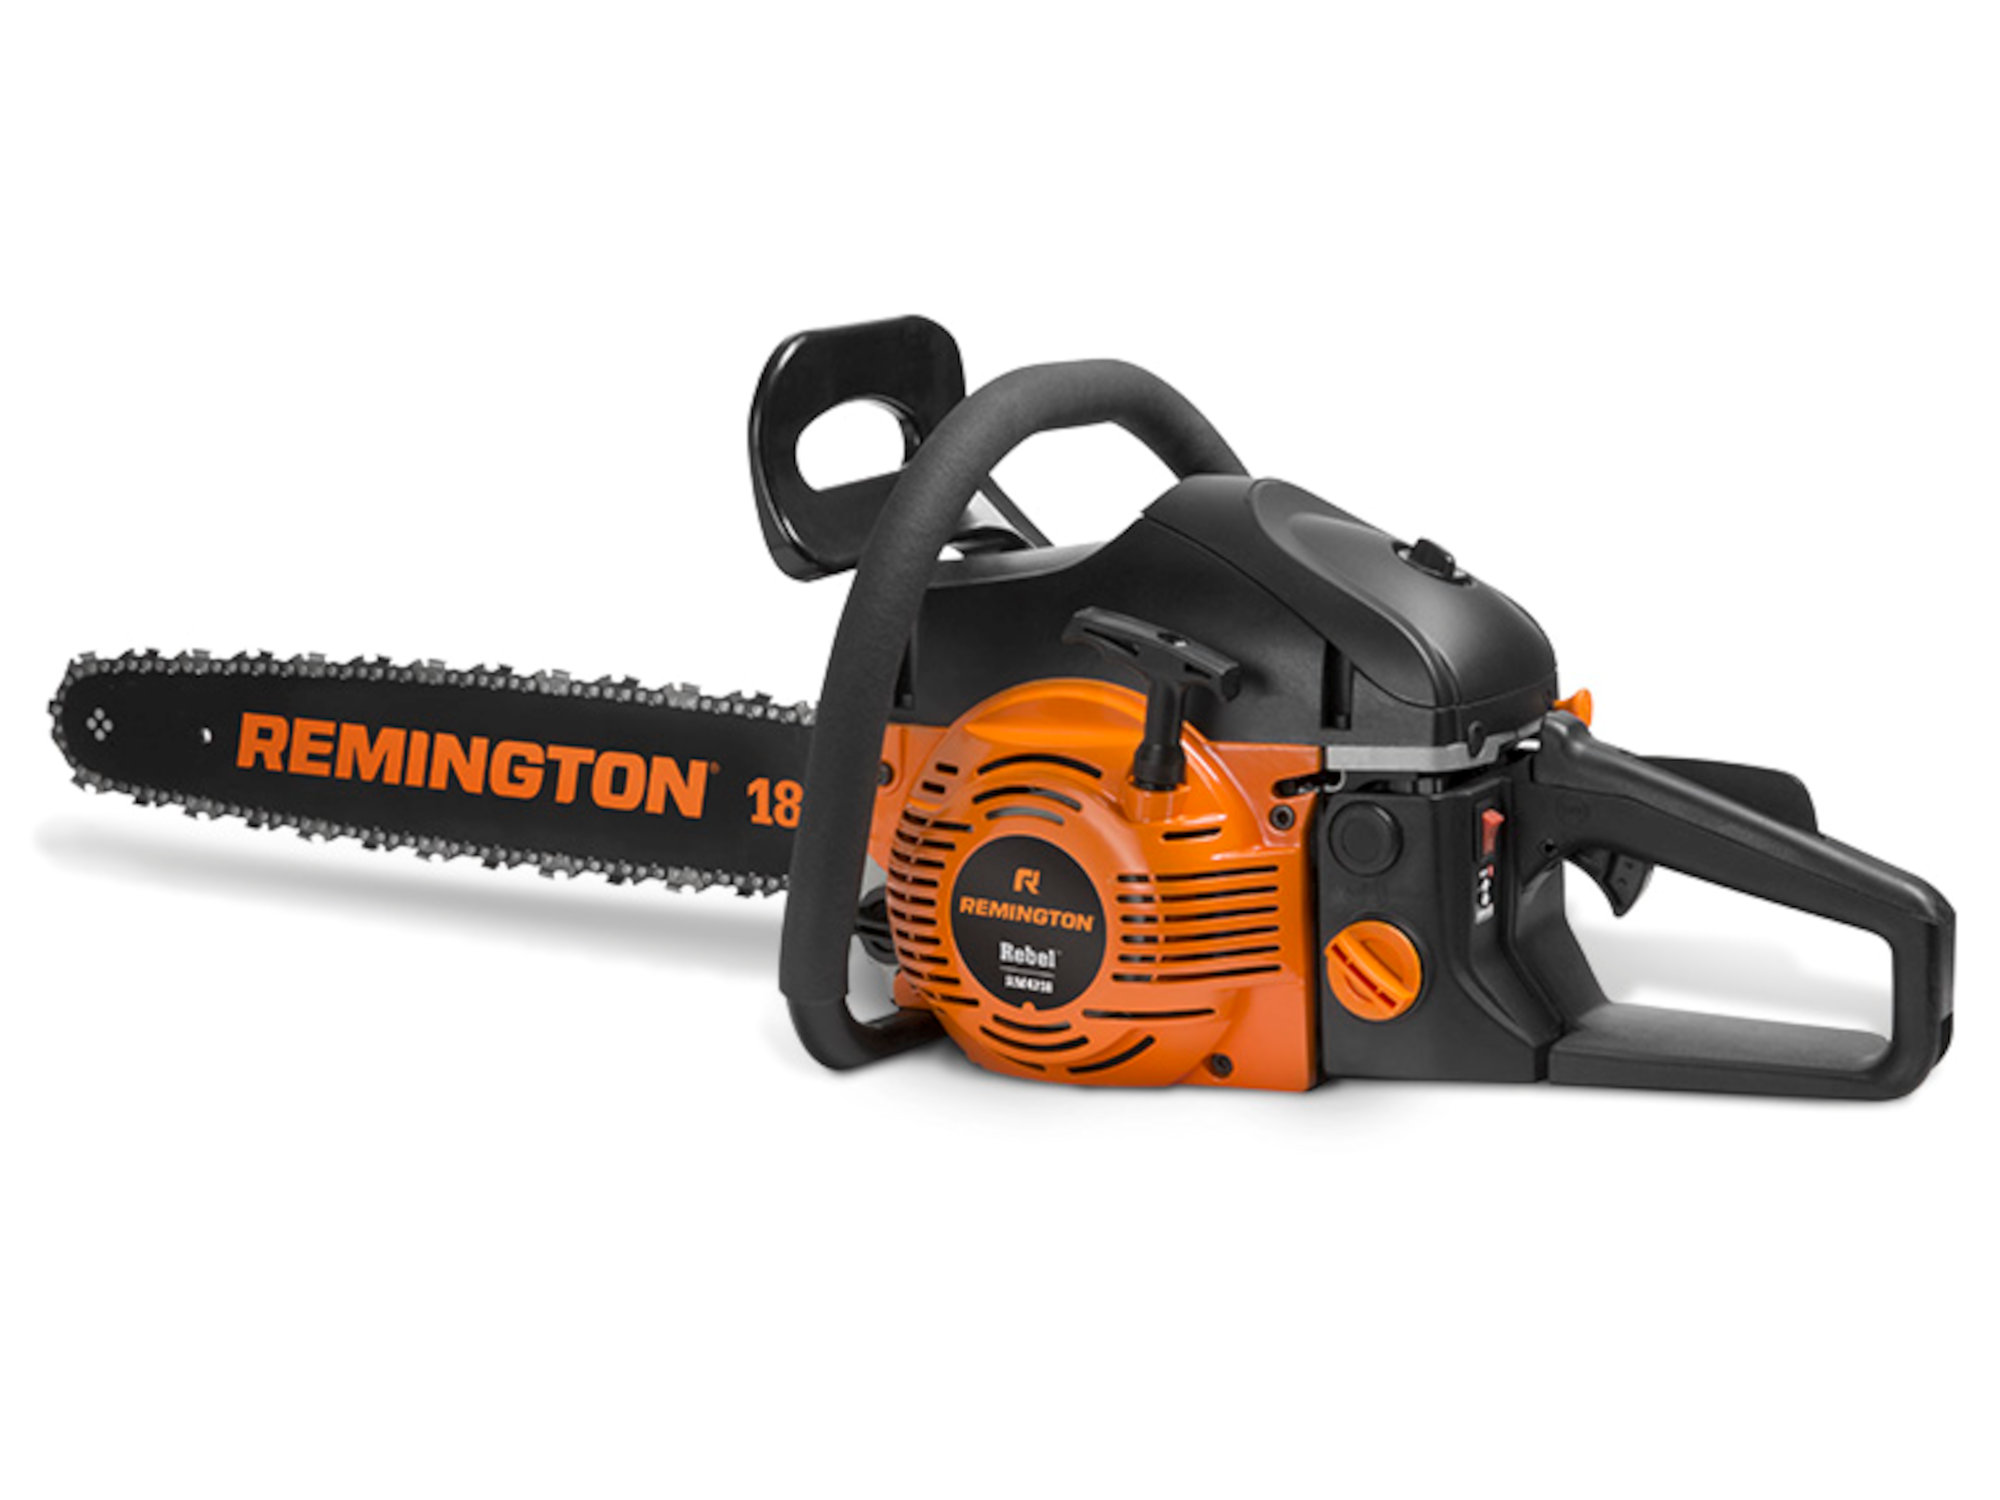 Remington RM4218 Rebel gas chainsaw